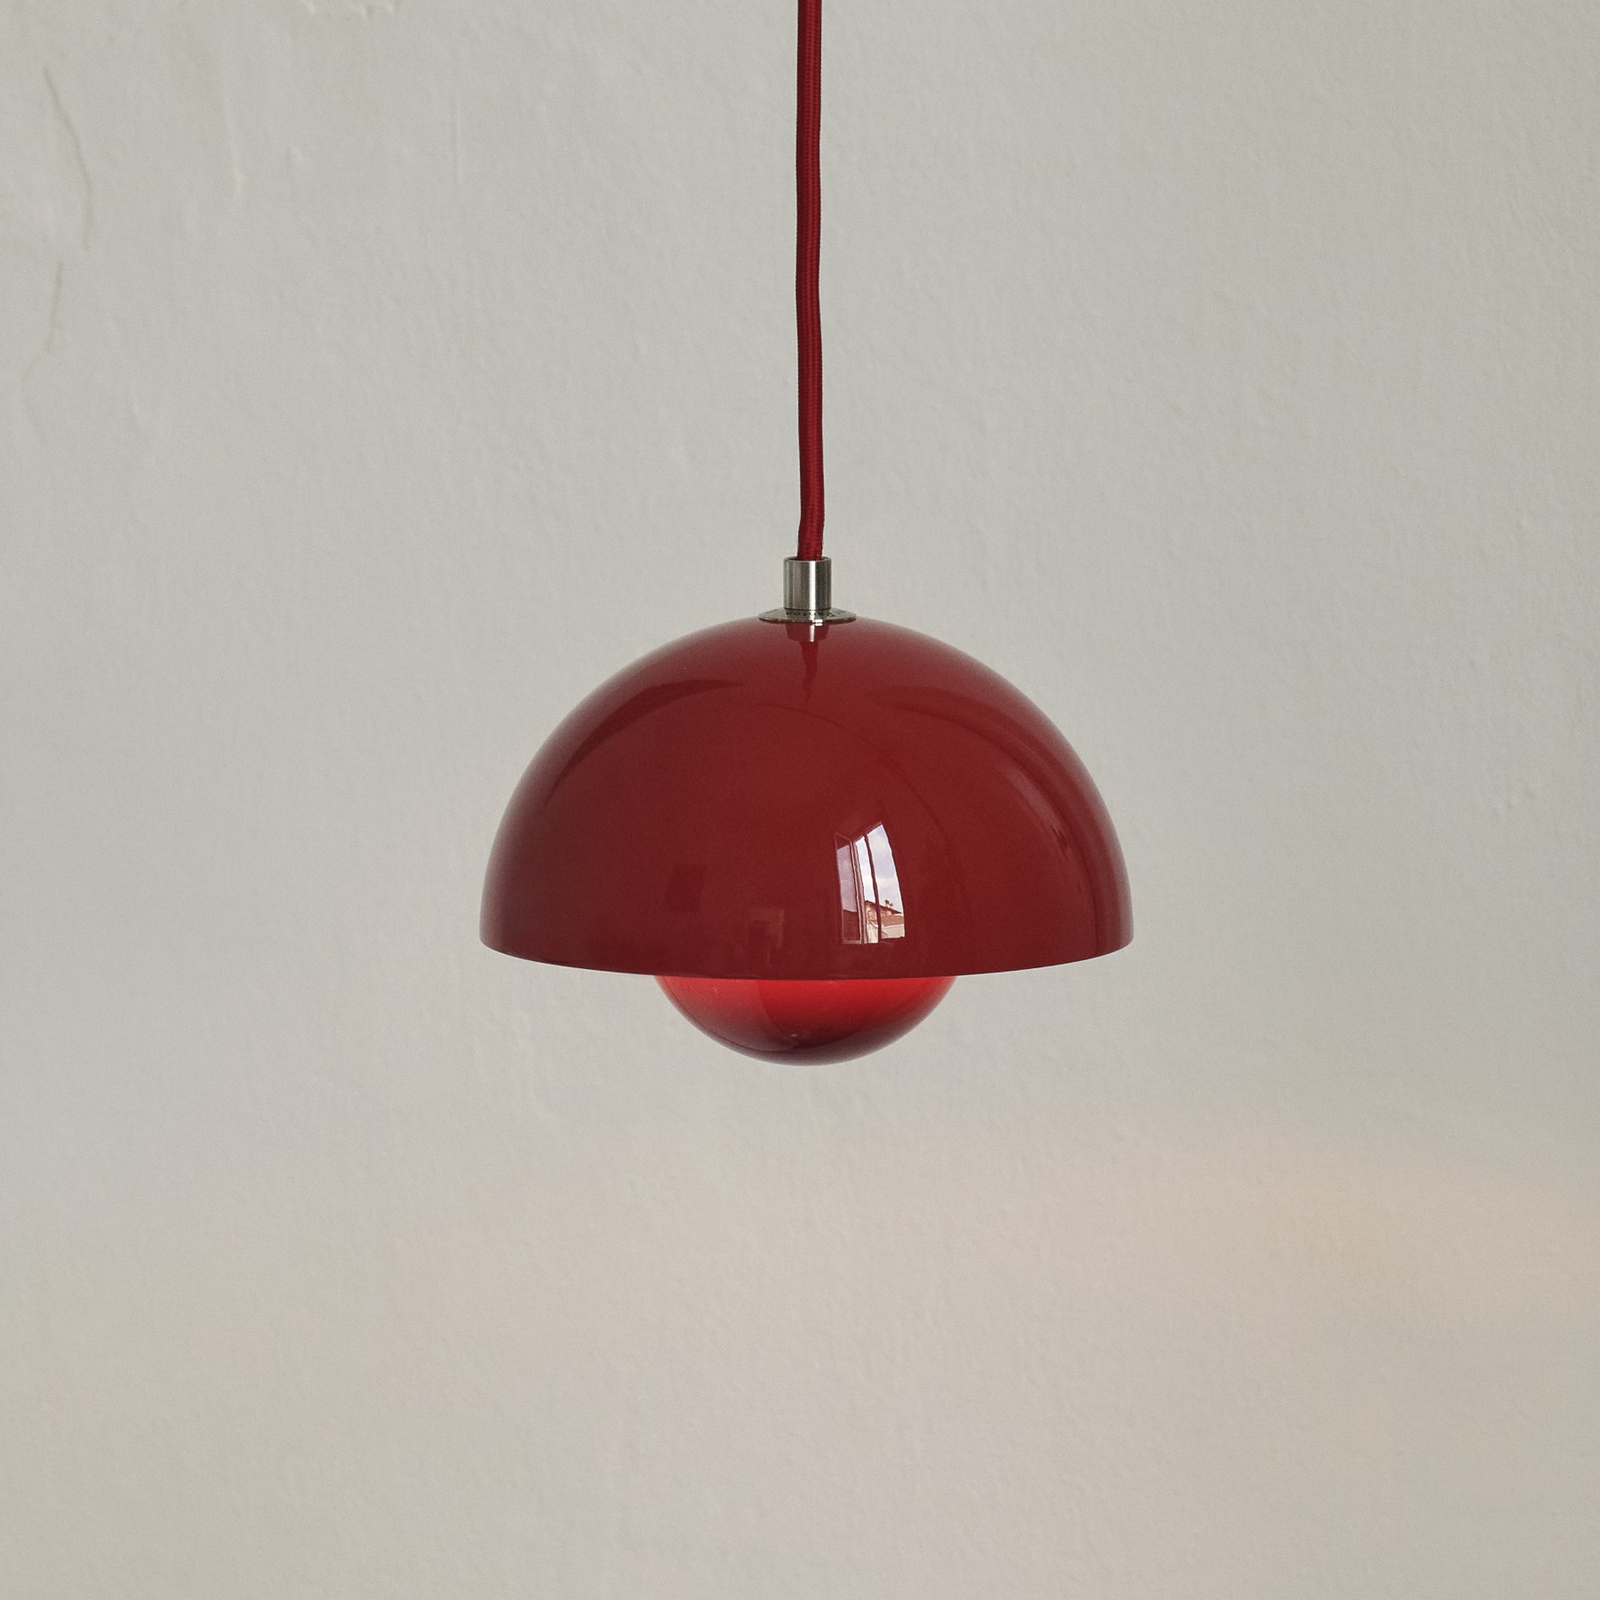 &Tradition pendant light Flowerpot VP10, Ø 16 cm, vermilion red